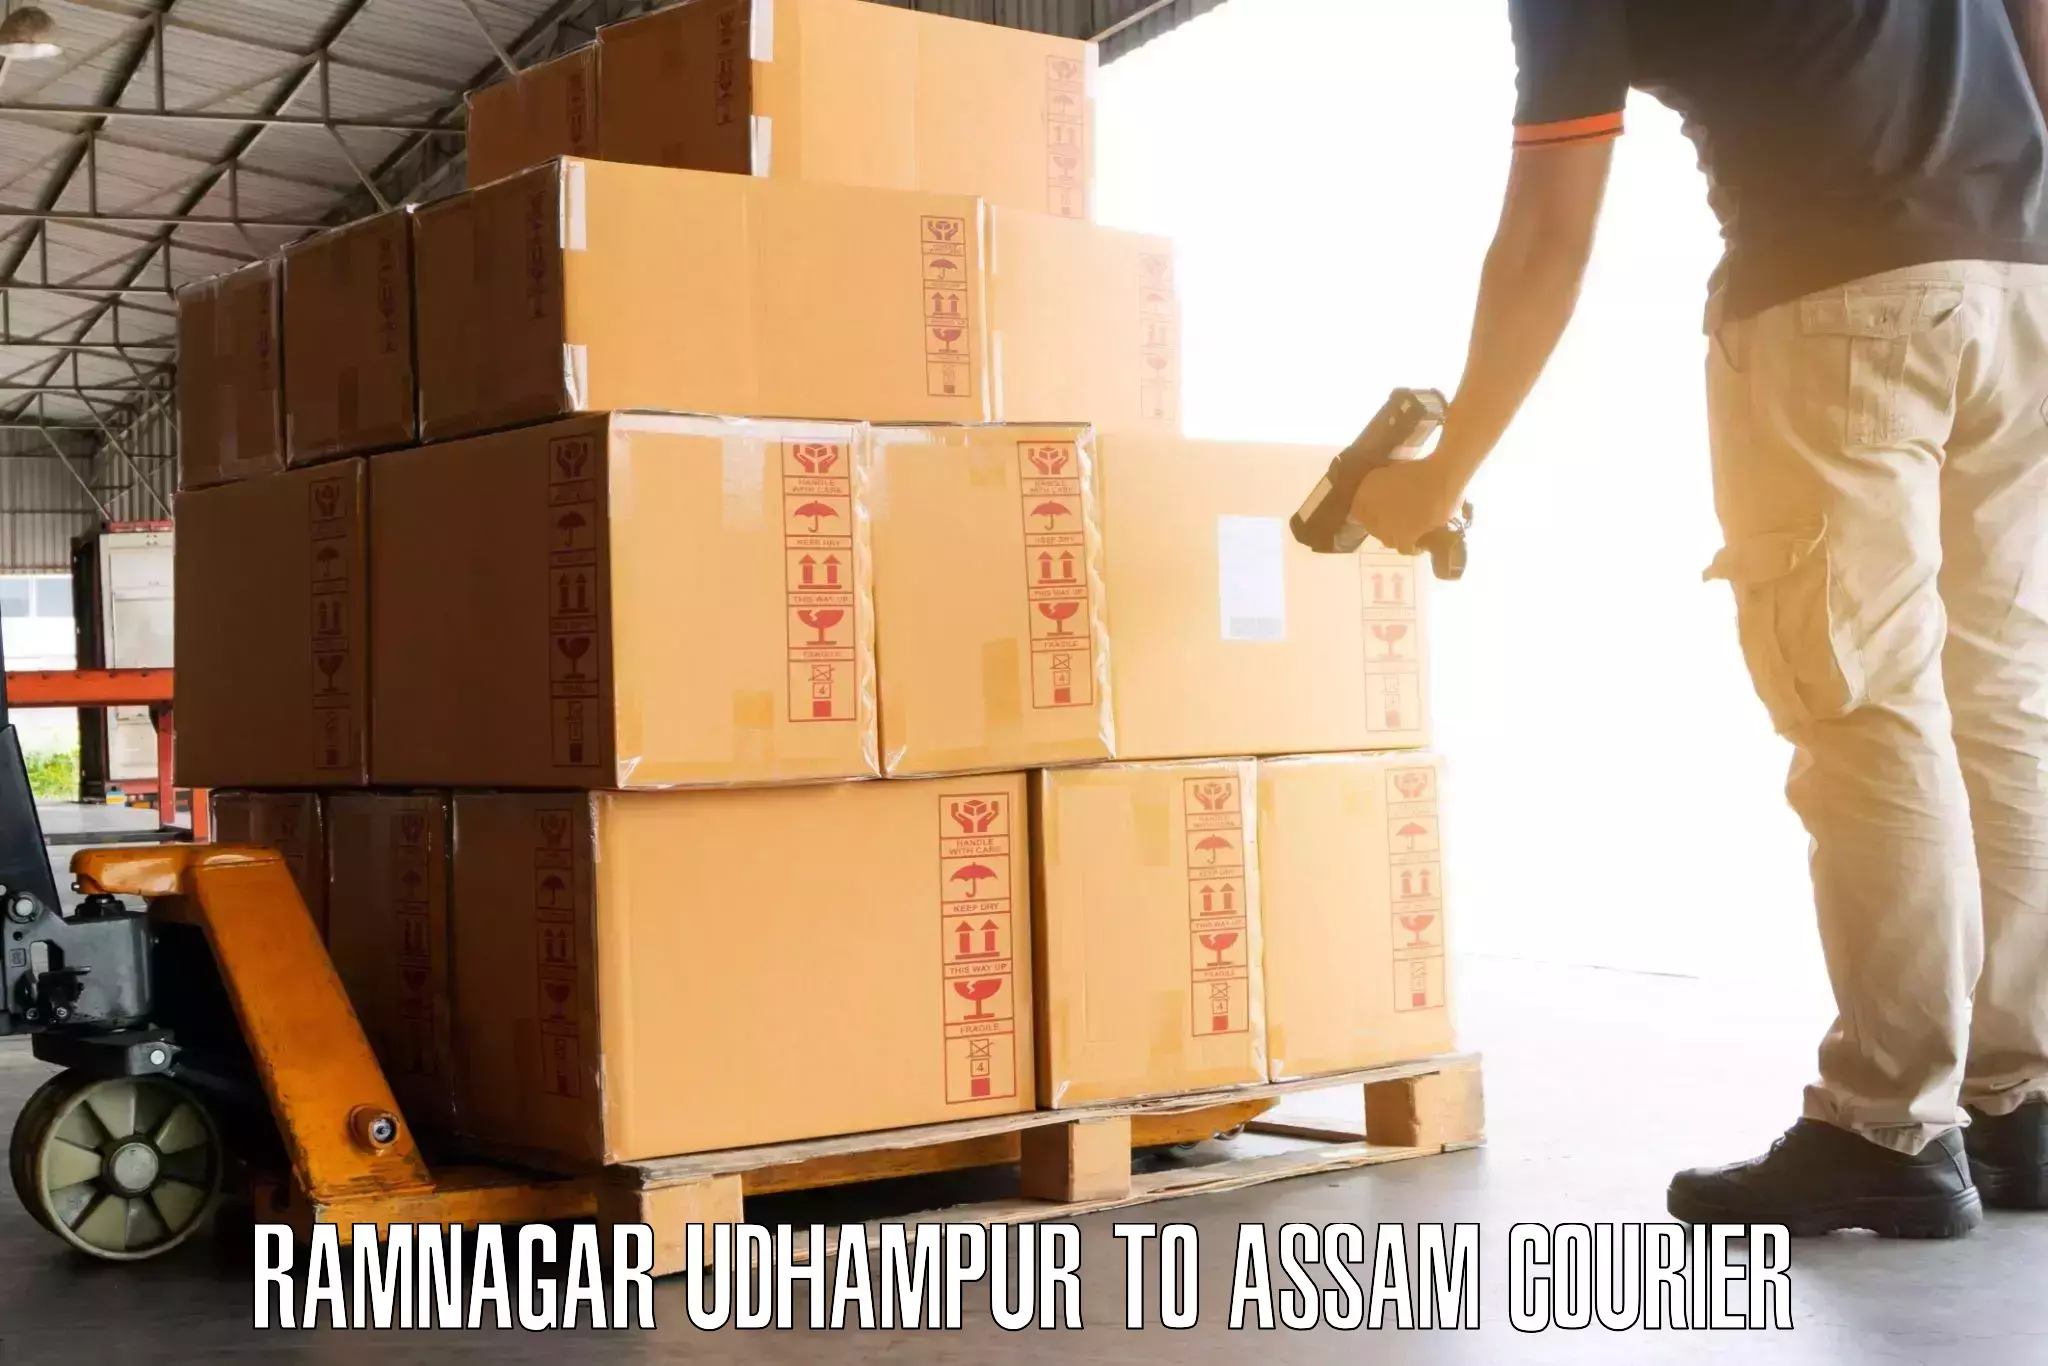 Doorstep luggage collection Ramnagar Udhampur to IIIT Guwahati